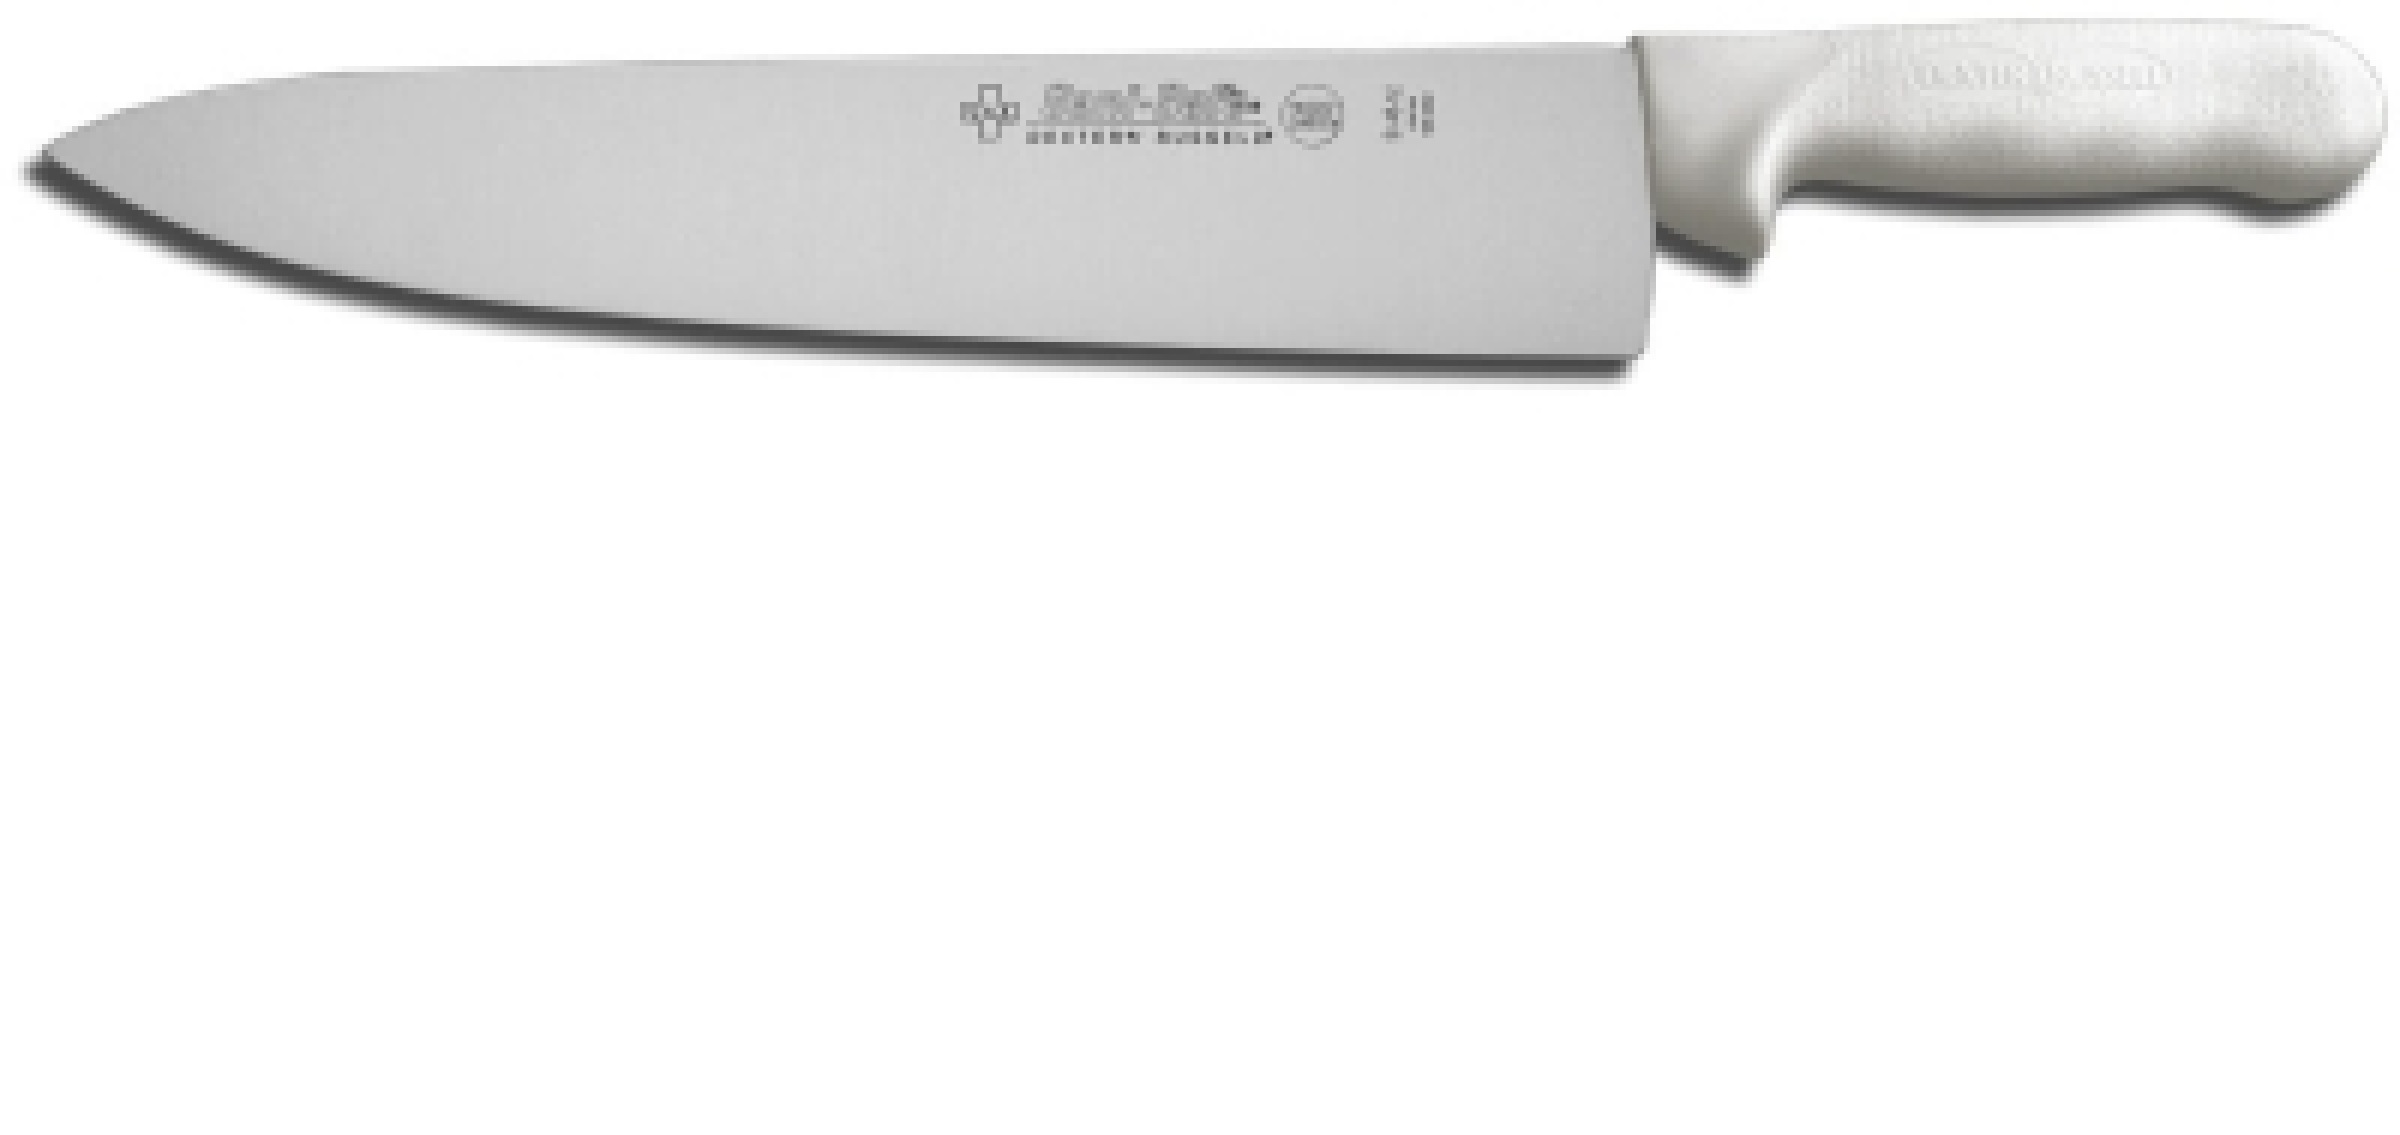 https://heimerdingercutlery.com/wp-content/uploads/2009/06/Dexter-Russell-12473-Chef-Knife-12-IN.jpg